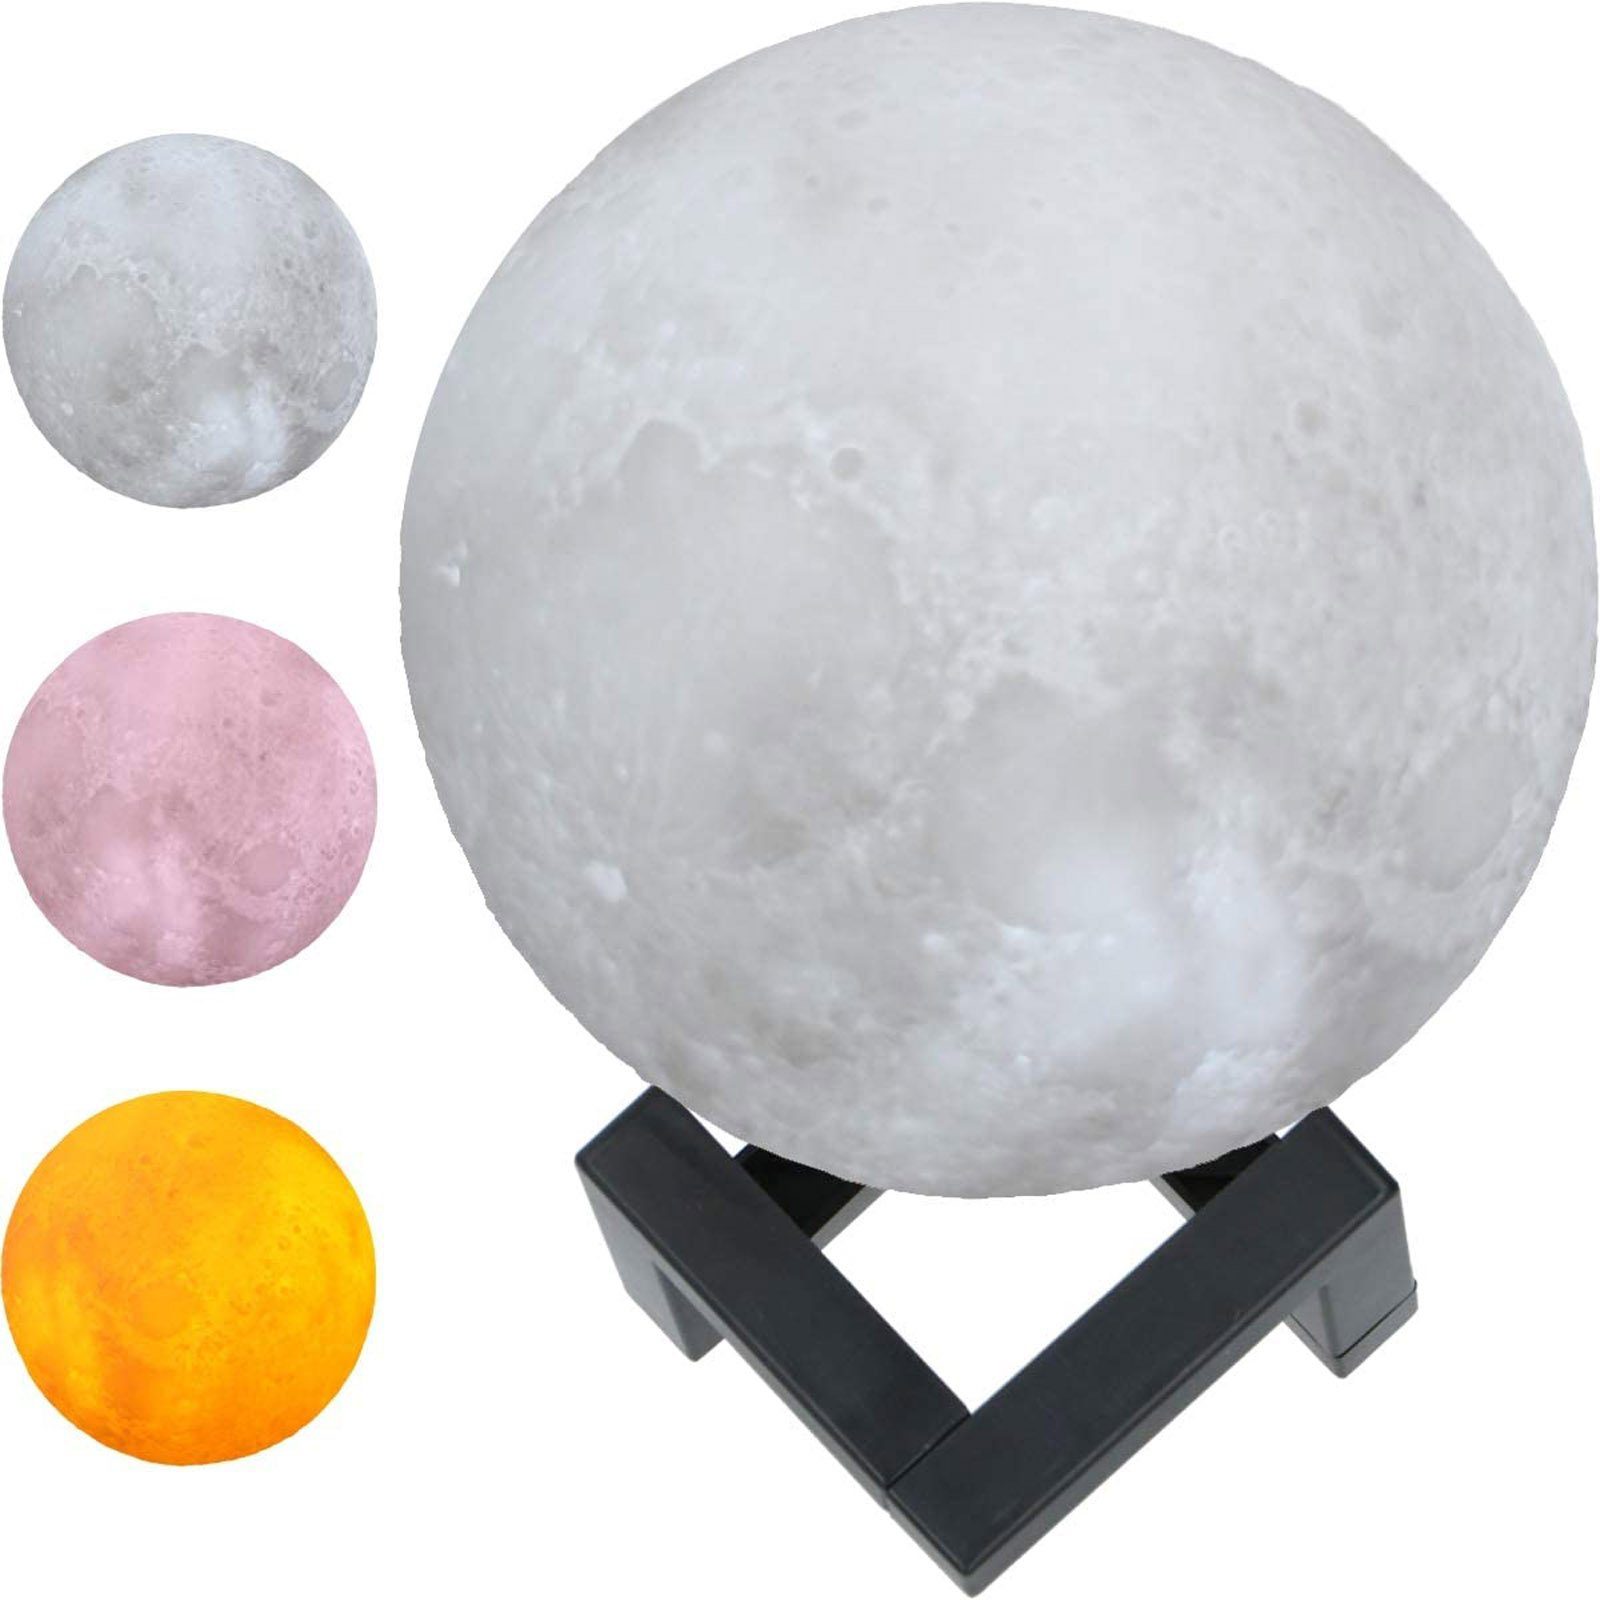 Grundig LED Nachtlicht Mond Lampe 3D Nachtlampe Mondkugel Tischlampe  Mondlicht Tischleuchte, LED fest integriert, Natürliches Weiß,  Stimmungsvolles Orange, Mystisches Rosa, leuchtet in 3 Farben, Ø 15 cm